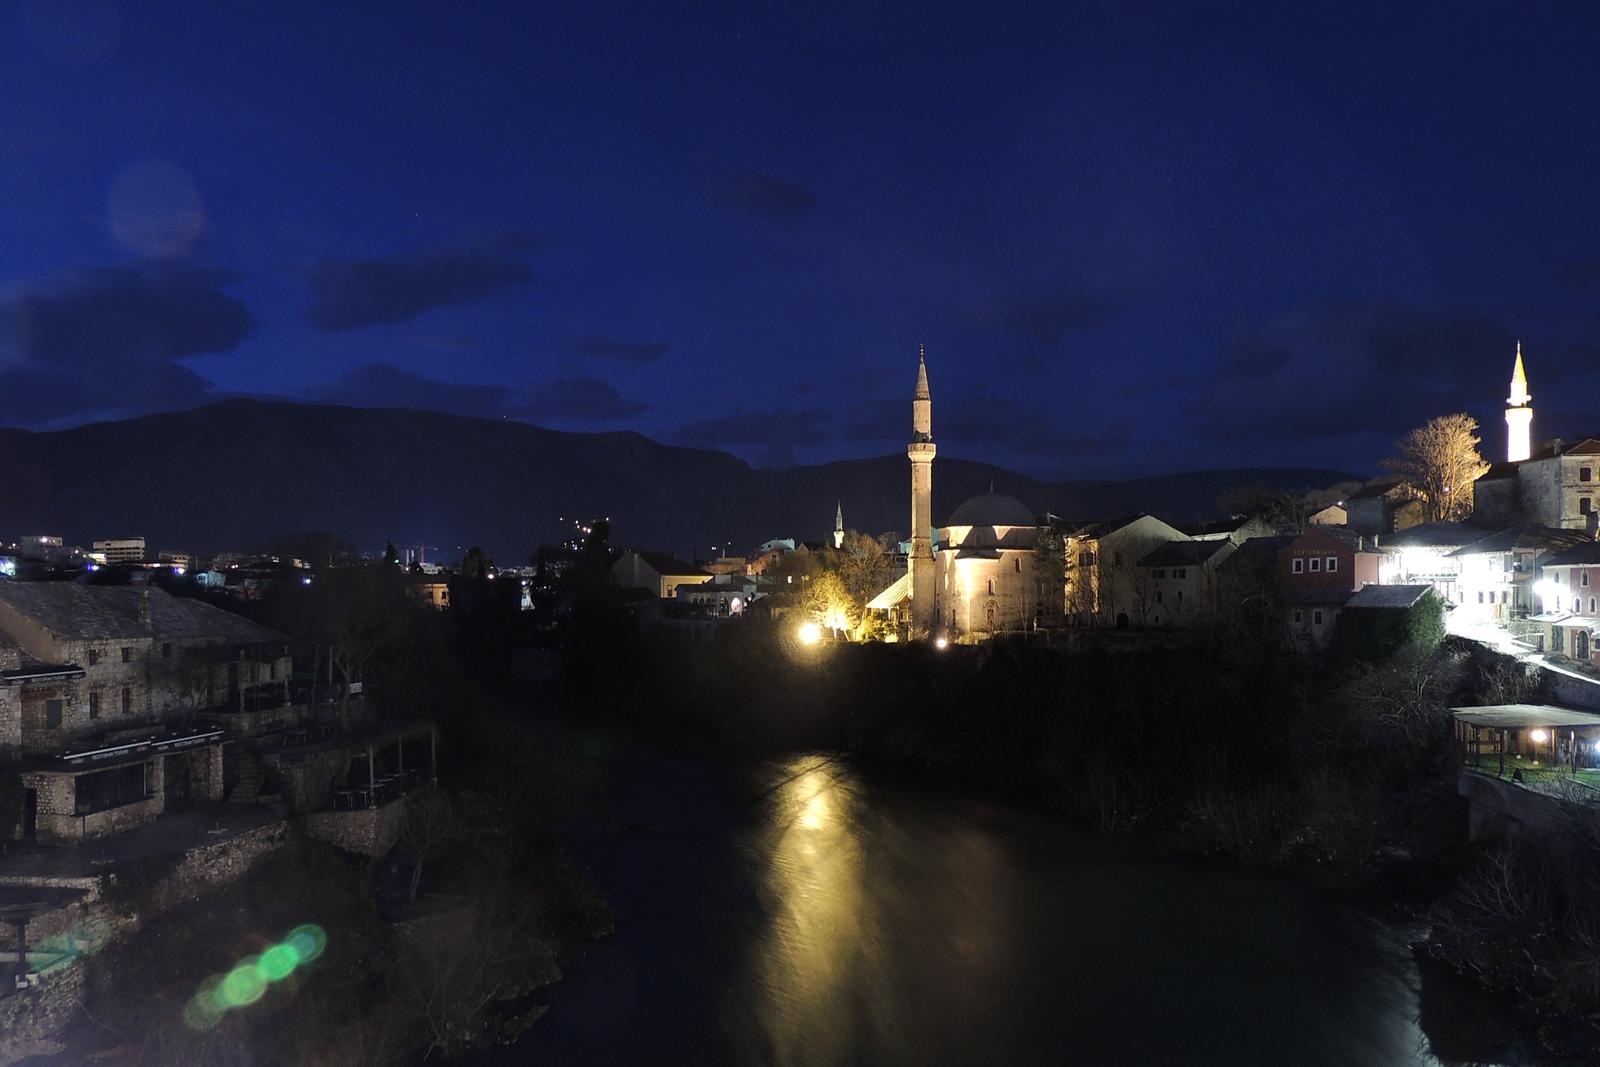 26.01.2014., Mostar - Stara jezgra grada Mostara slabo je posjecena zimi. Grad je poznat po cuvenom Starom mostu iznad rijeke Neretve. Izgradjen je u 16. stoljecu, a 9. studenog 1993. godine srusen od strane snage HVO-a. Ponovo je sagradjen 2004. godine te  je prvi kulturni spomenik u Bosni i Hercegovini koji se nalazi na UNESCO-voj listi zasticenih spomenika kulture svijeta."nPhoto: Borna Filic/PIXSELL